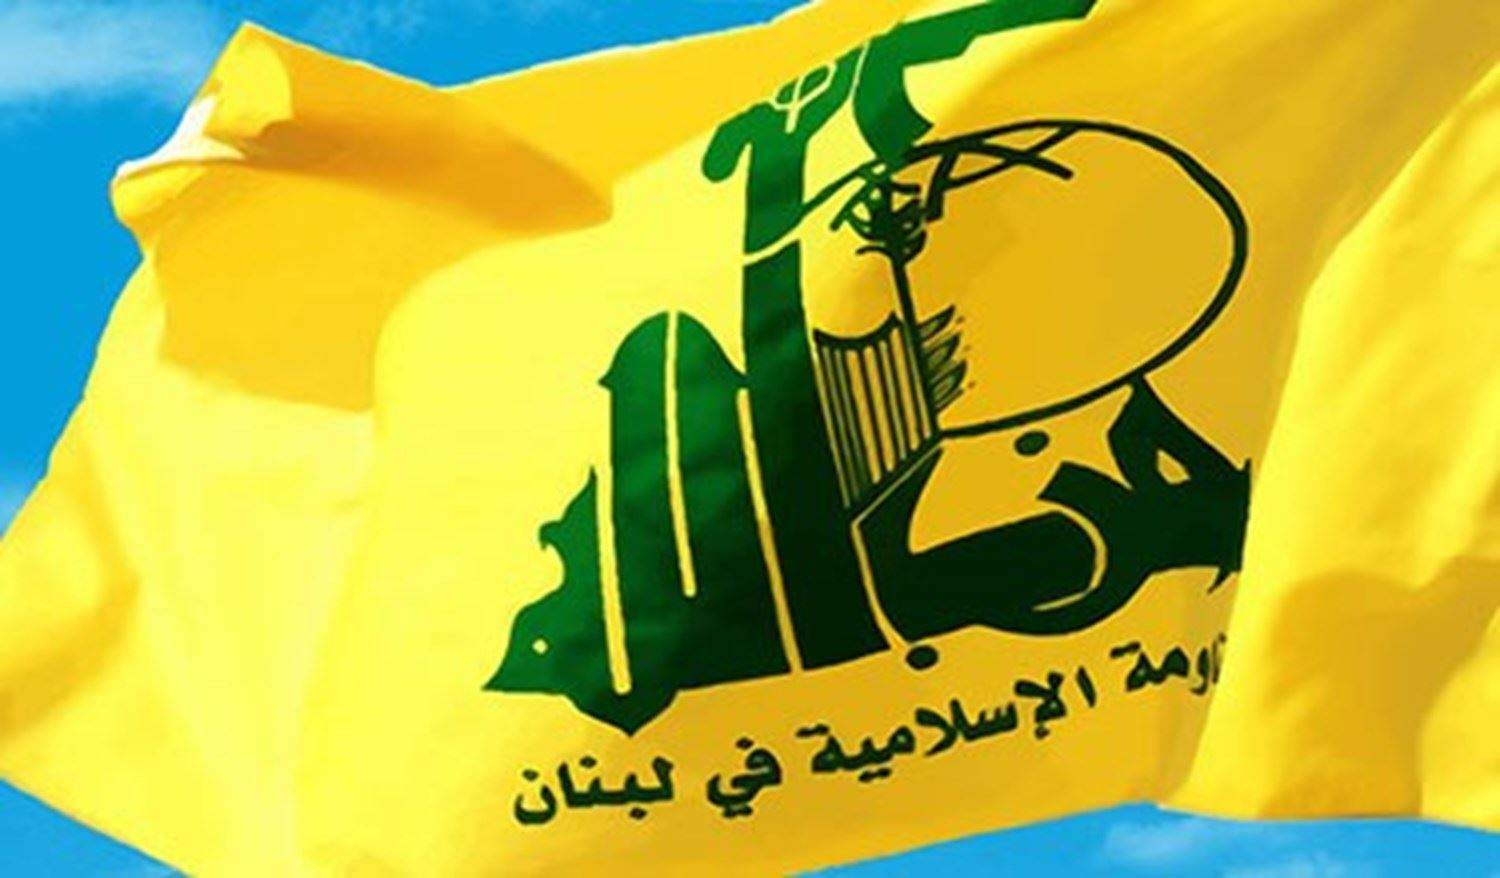 حزب الله: للمرة الألف لا يوجد مصادر في الحزب أو مصادر قريبة منه!